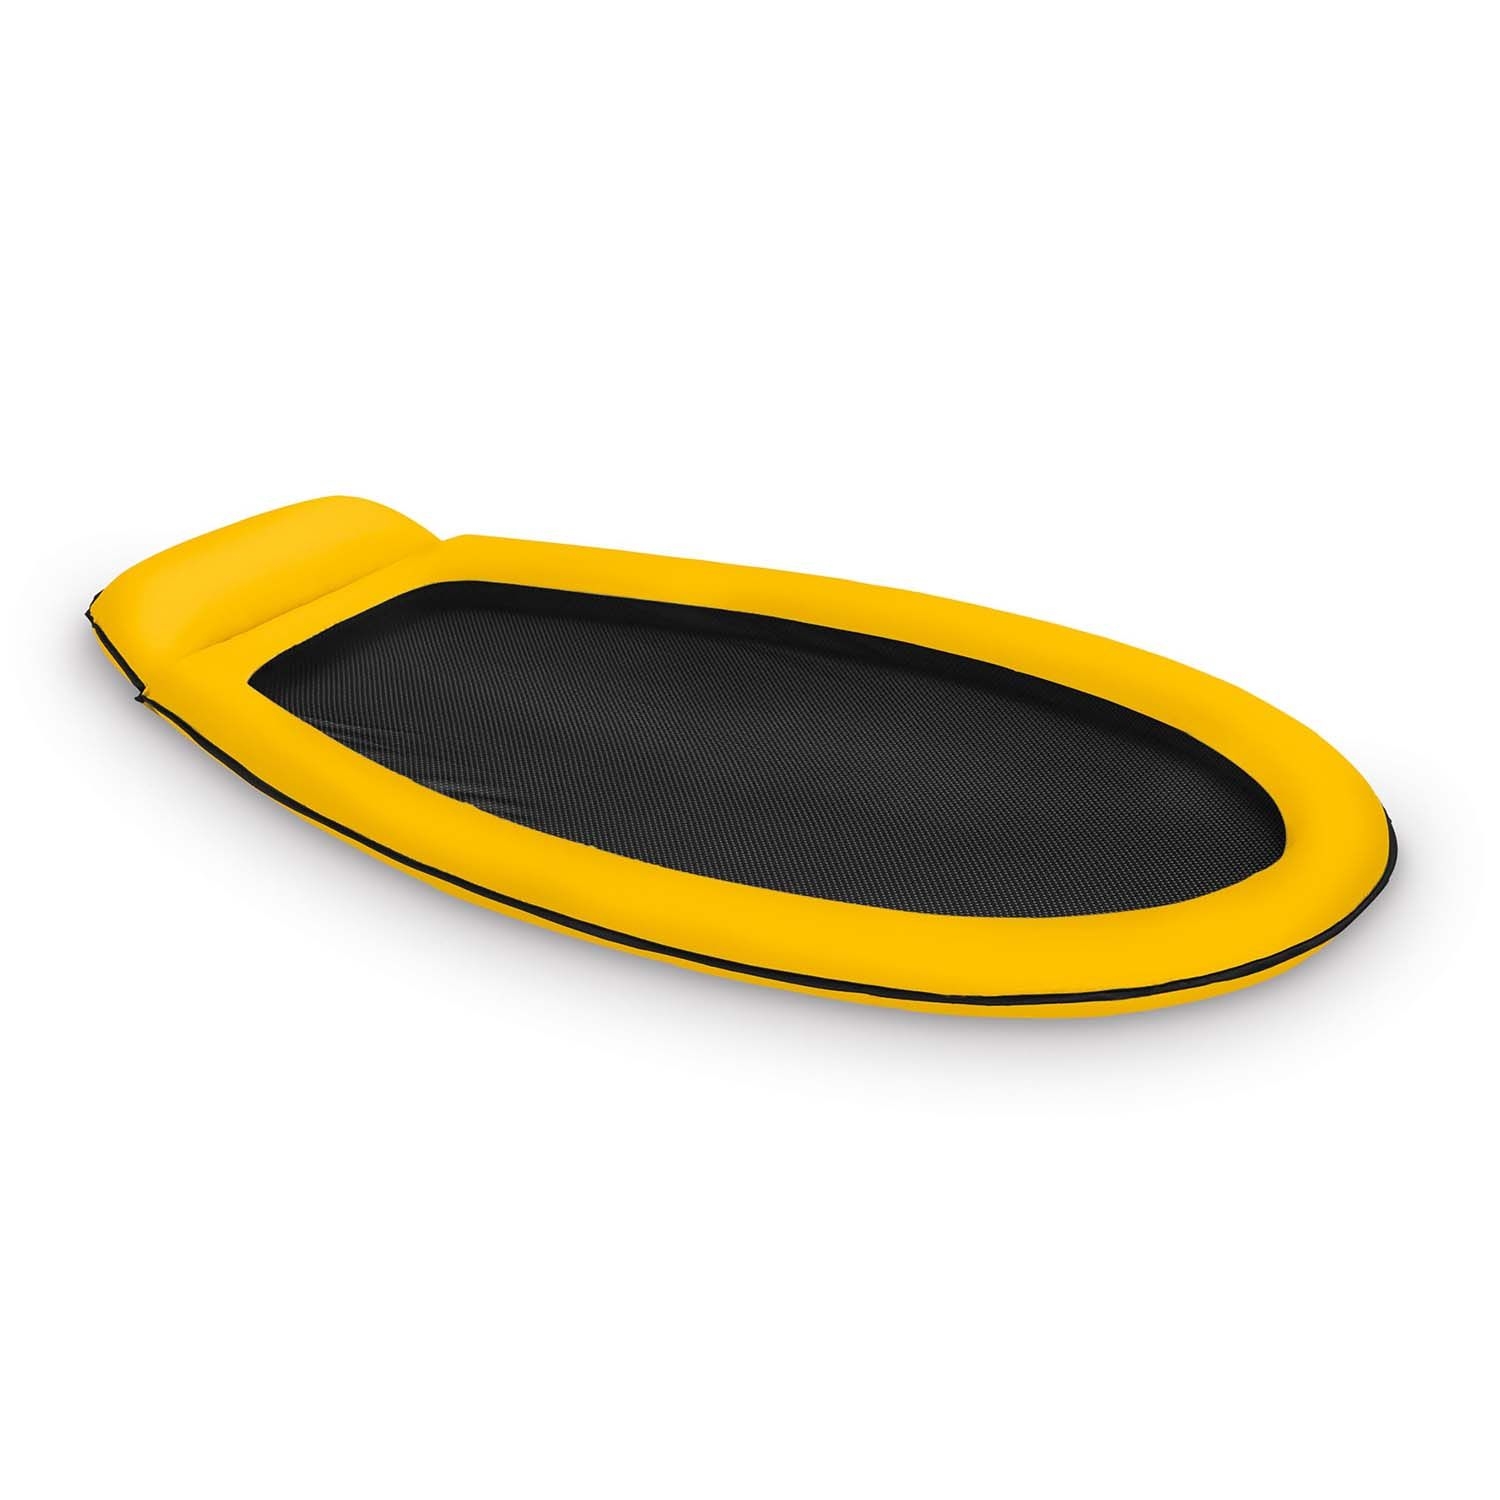 Zdjęcia - Zabawka do kąpieli Intex Materac plażowy do pływania z siatką, , 178x94 cm, żółty 